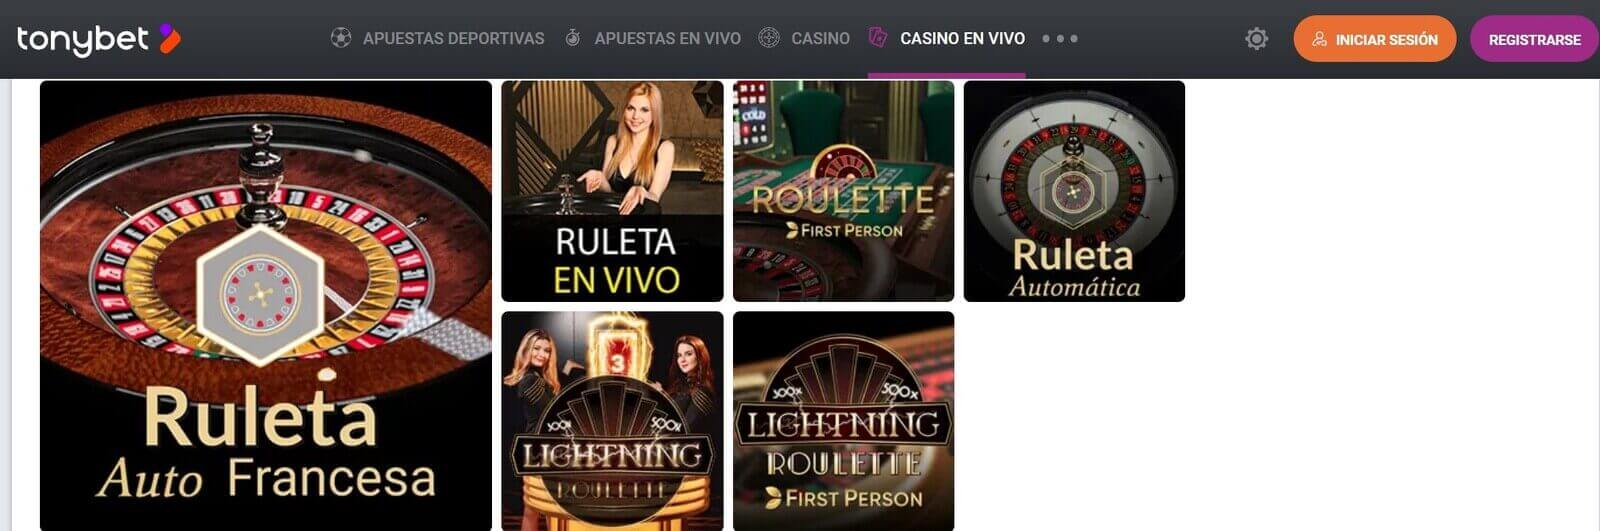 Juegos de casino en vivo de TonyBet Casino online en España